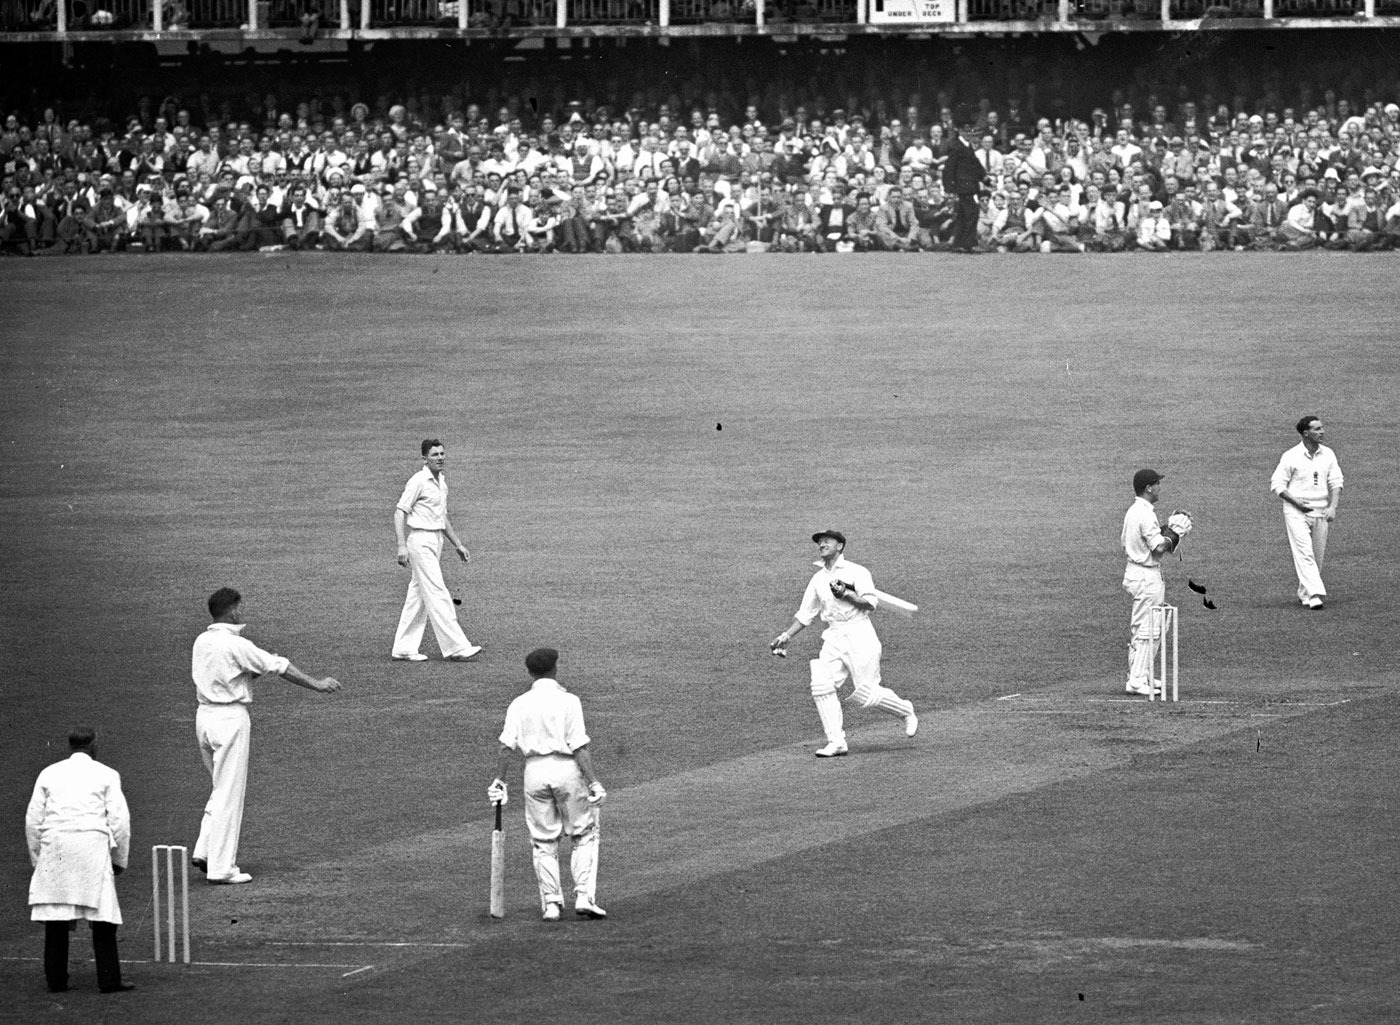 लिस्ट में चौथे नंबर पर शामिल है डॉन ब्रैडमेन की कप्तानी वाली ऑस्ट्रेलिया की टीम. 1946 में खेले गए इस टेस्ट में ऑस्ट्रेलिया ने इंग्लैंड को पारी और 332 रनों से हराया था. ब्रैडमेन की 187 रनों की पारी की बदौलत ऑस्ट्रेलिया ने 645 रन बनाए थे जबकि इंग्लैंड की टीम 141 और 172 रनों पर ढेर हो गई थी.